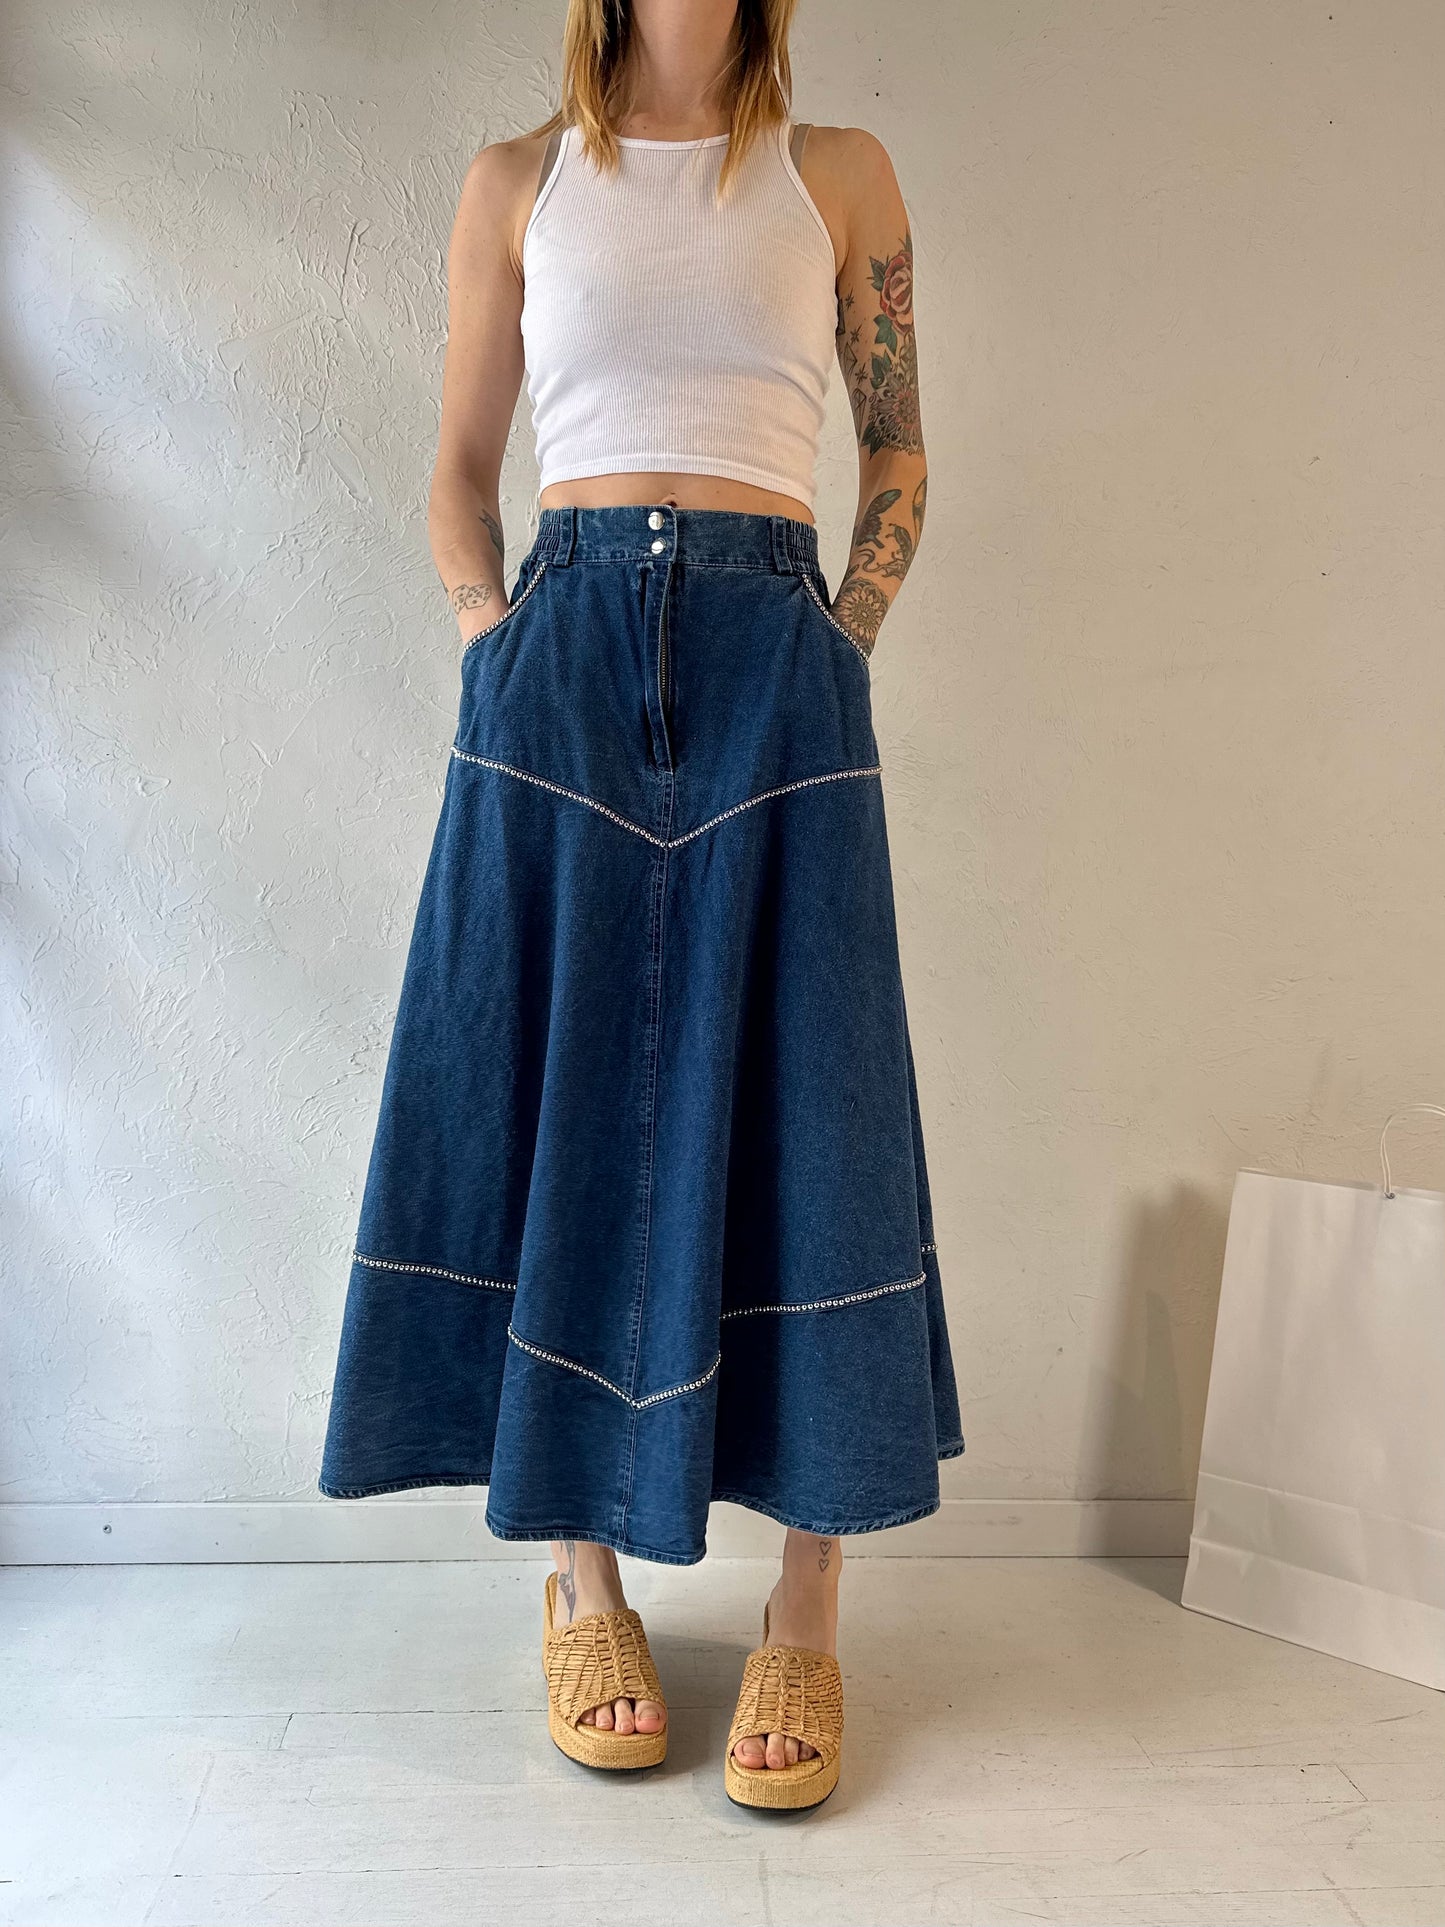 90s 'Jazzino' Denim Skirt / Small